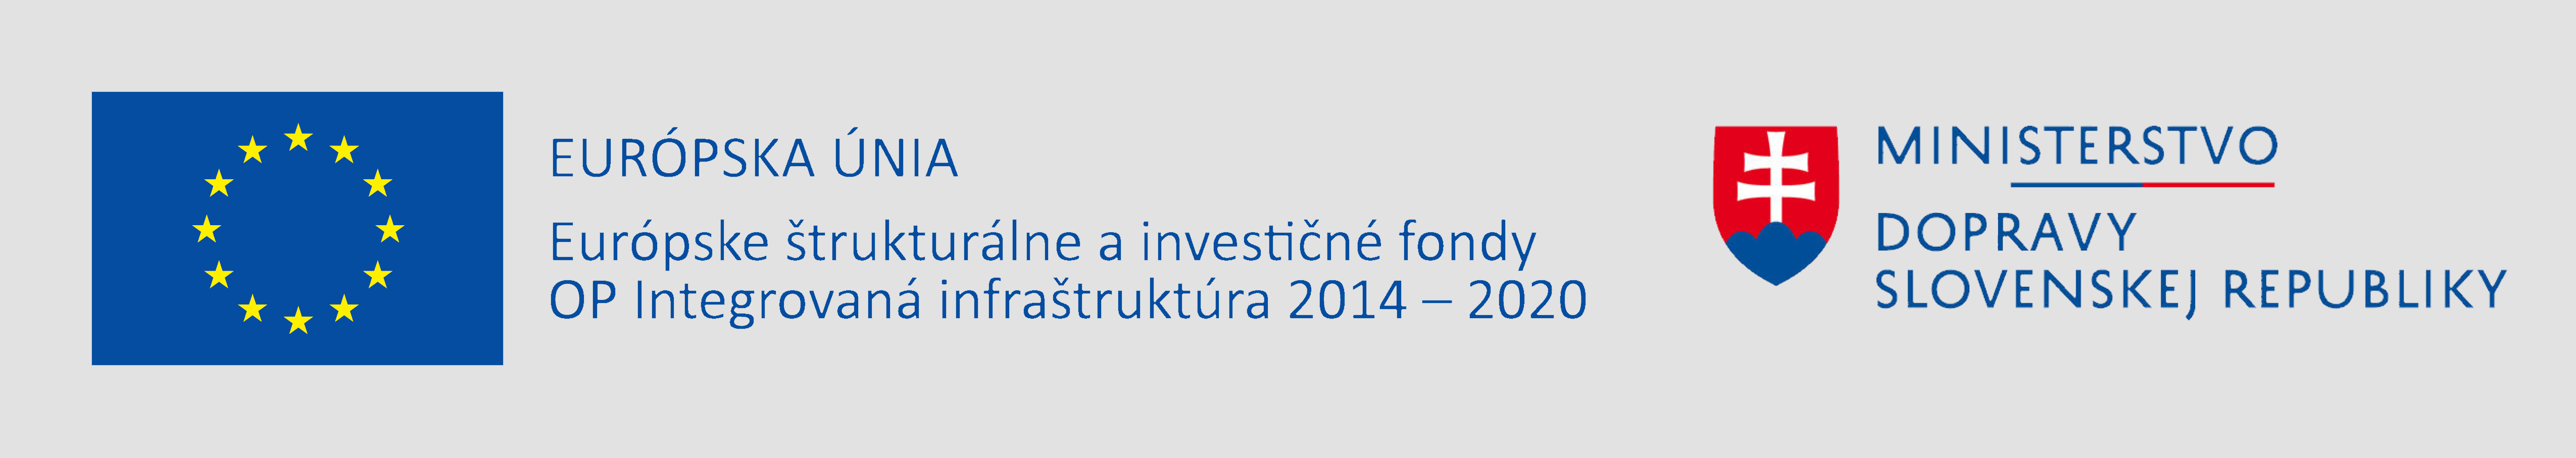 Európsky fond regionálneho rozvoja
OP Integrovaná infraštruktúra 2014 – 2020